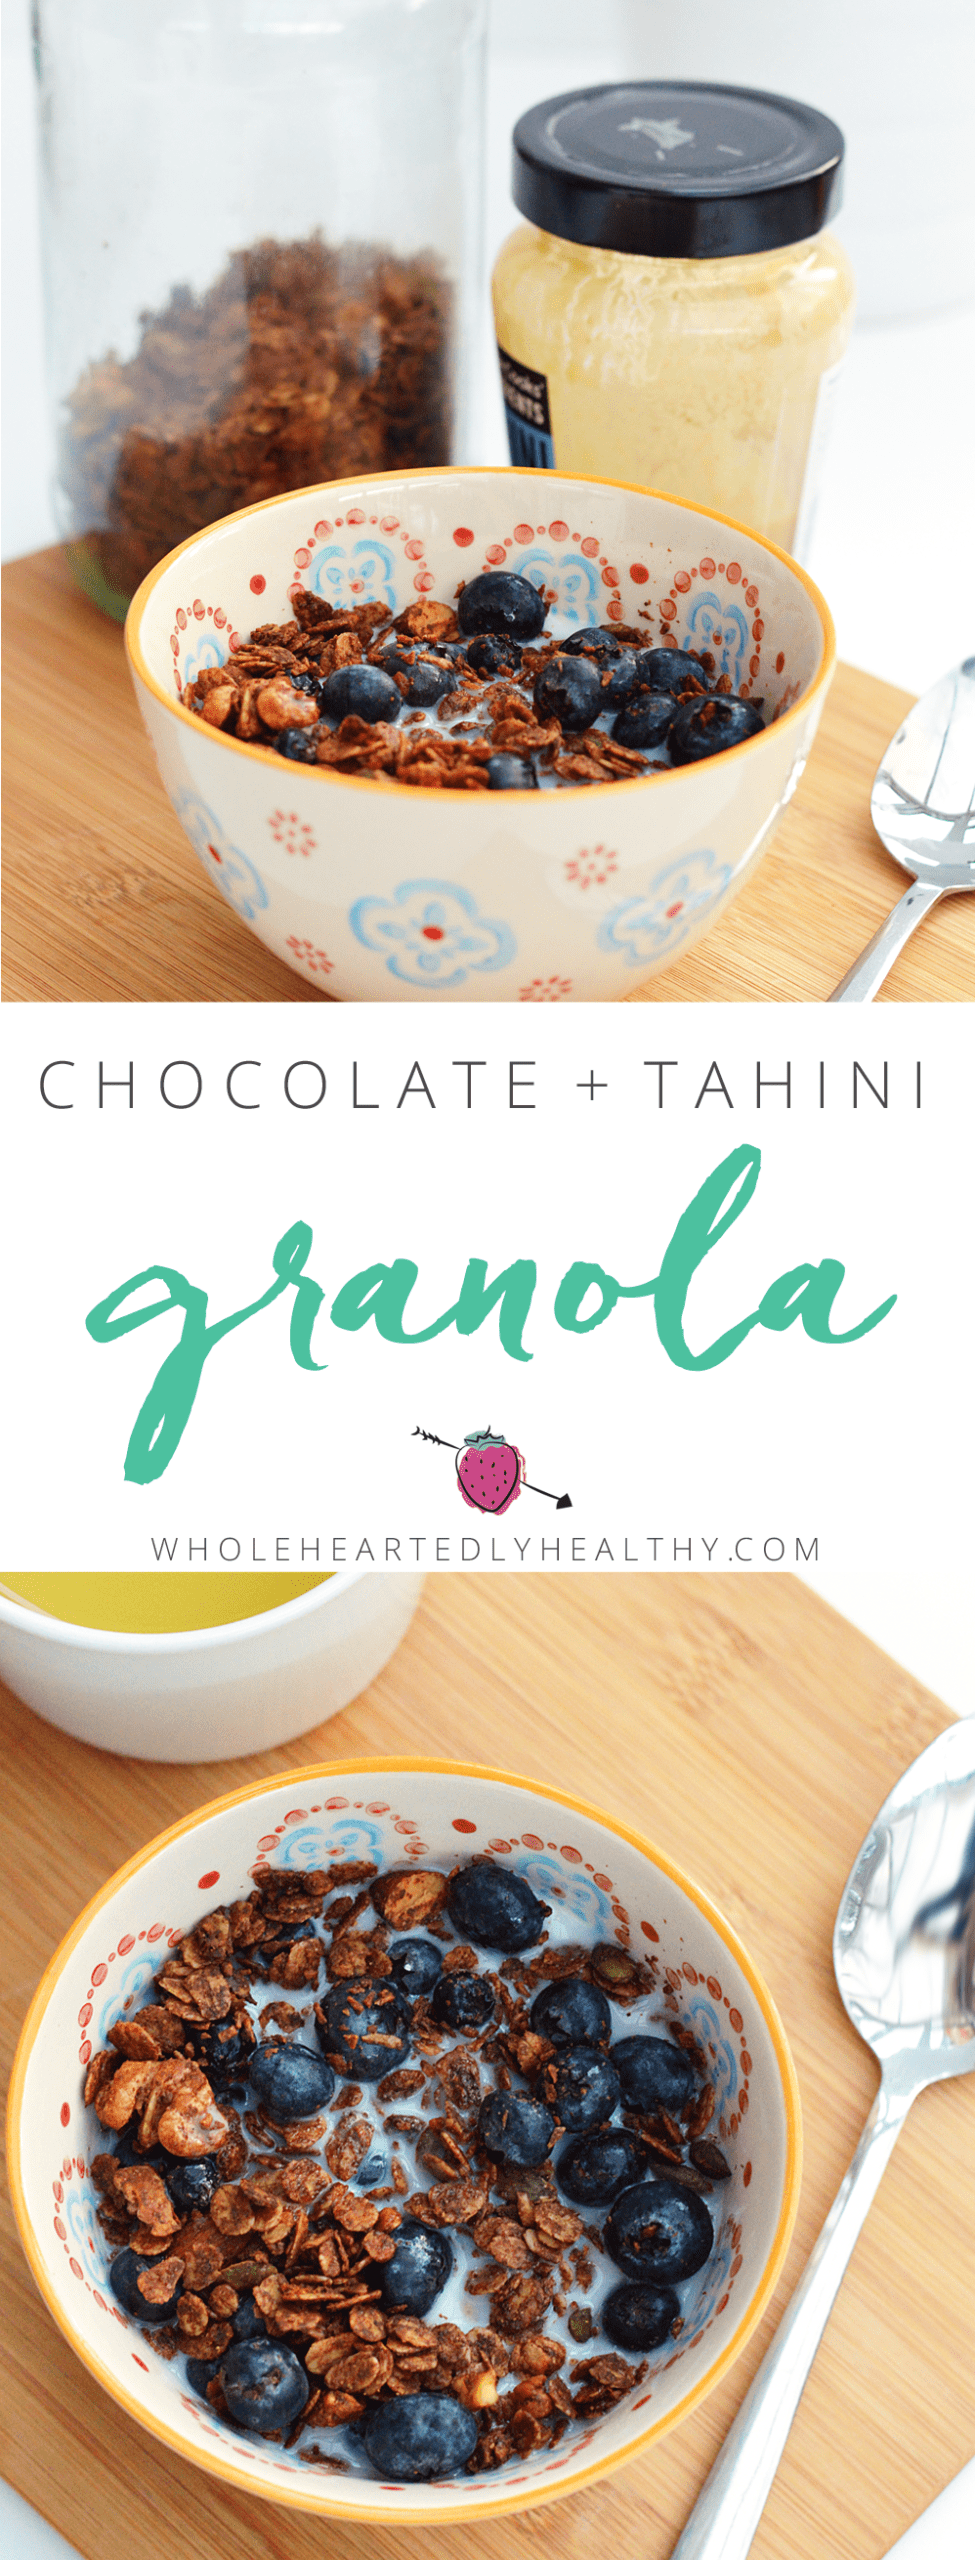 Chocolate and tahini granola